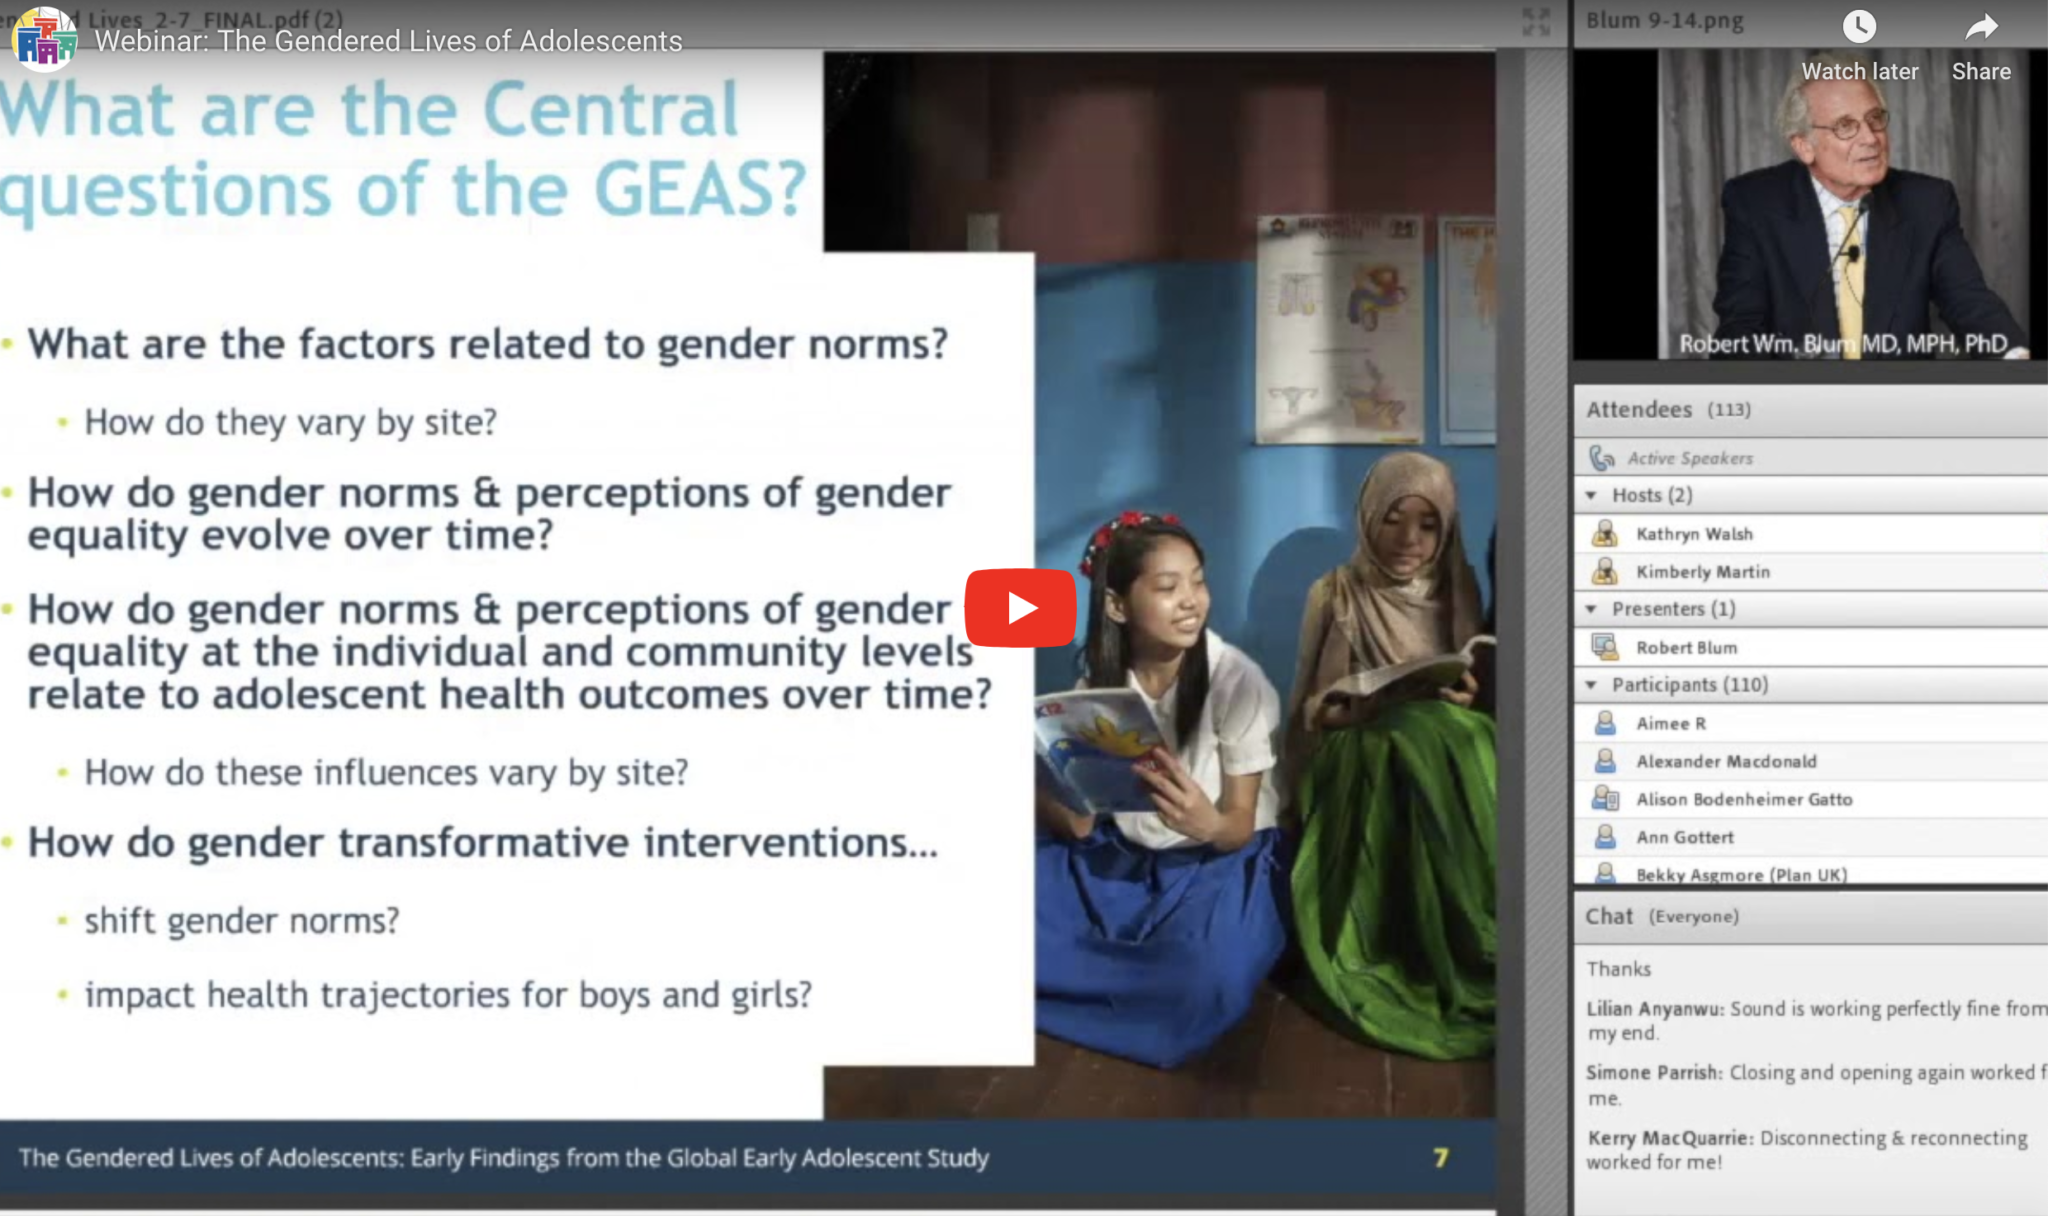 Webinar: युवा किशोरों के लिंग जीवन: वैश्विक प्रारंभिक किशोर अध्ययन से सबक